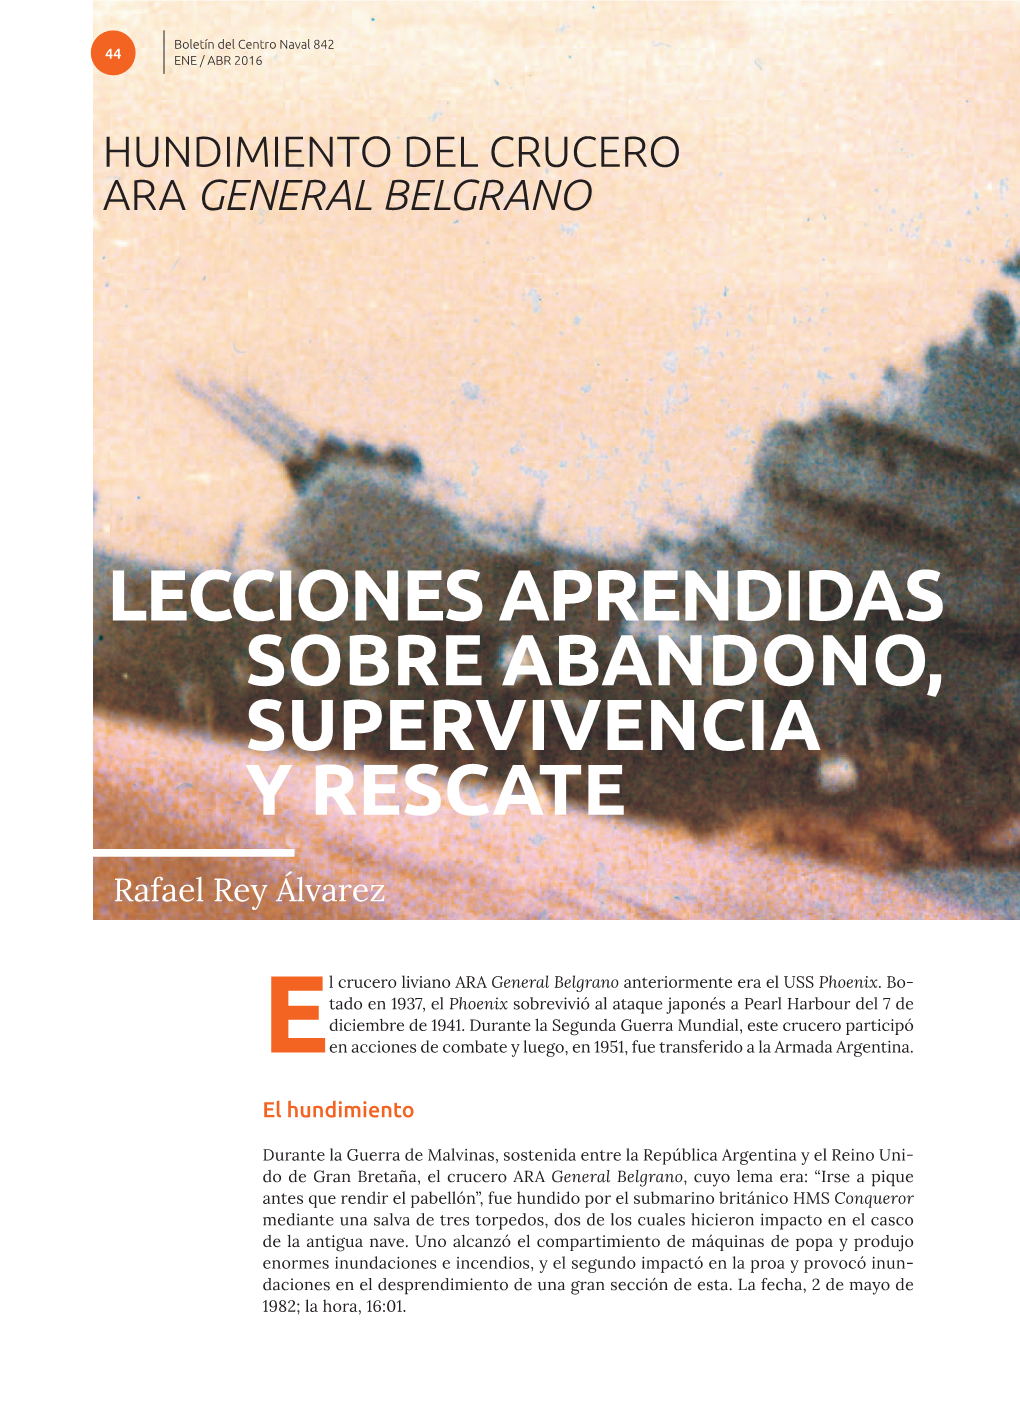 Hundimiento Del Crucero Ara General Belgrano: Lecciones Aprendidas Sobre Abandono, Supervivencia Y Rescate